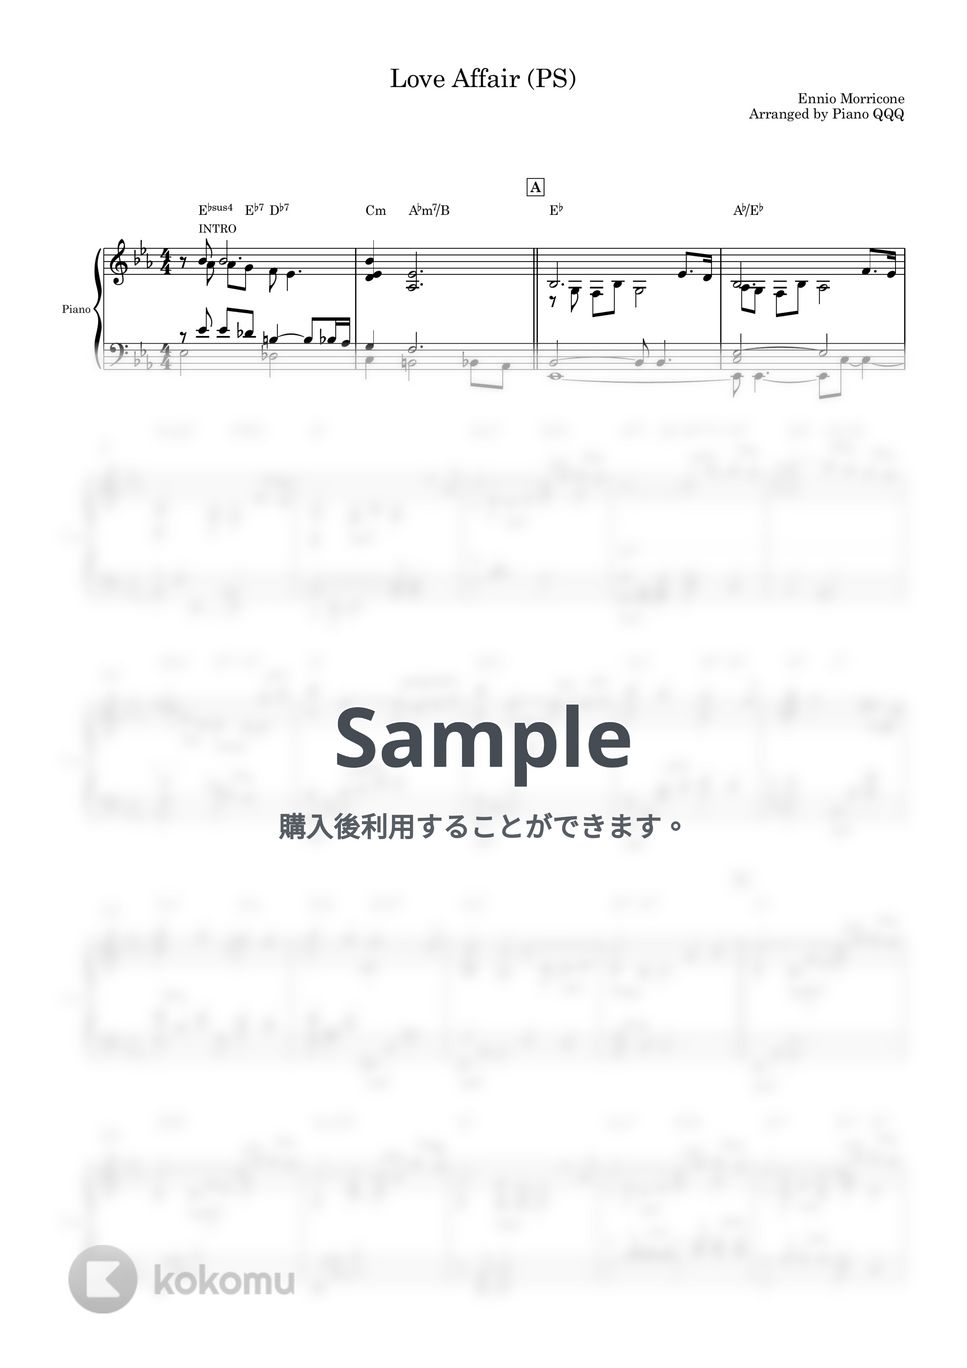 Ennio Morricone - Love Affair (ピアノソロ) by Piano QQQ